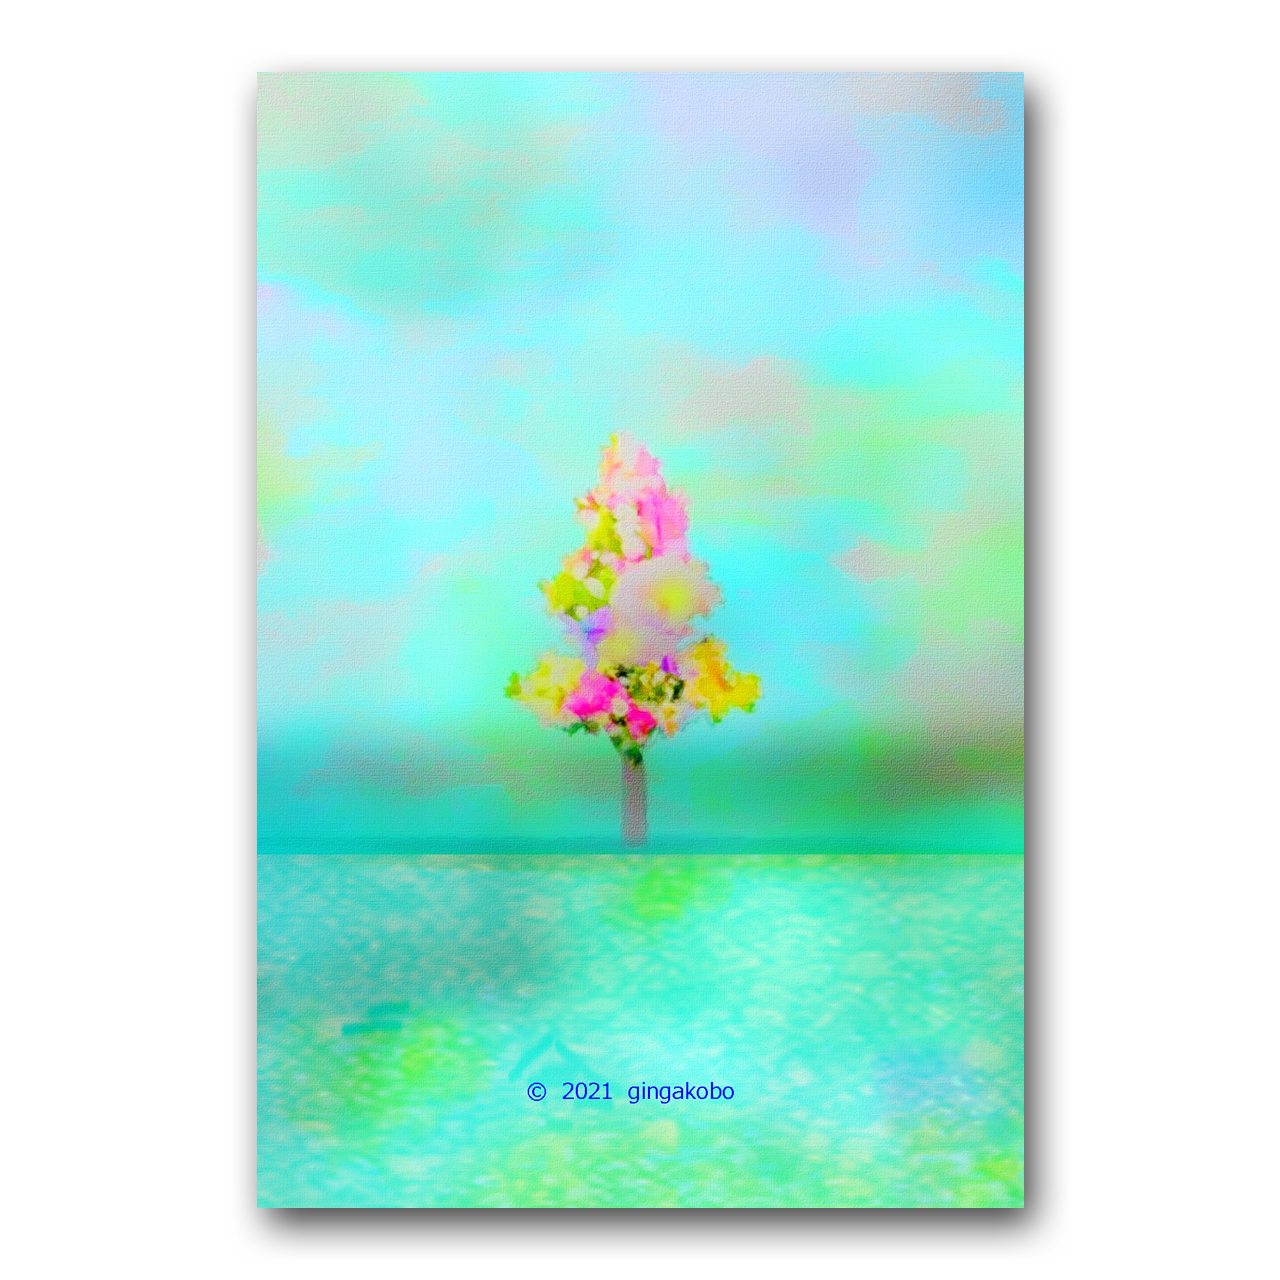 鎹 かすがい が生まれた日 ほっこり癒しのイラストポストカード2枚組 No 1262 Iichi ハンドメイド クラフト作品 手仕事品の通販